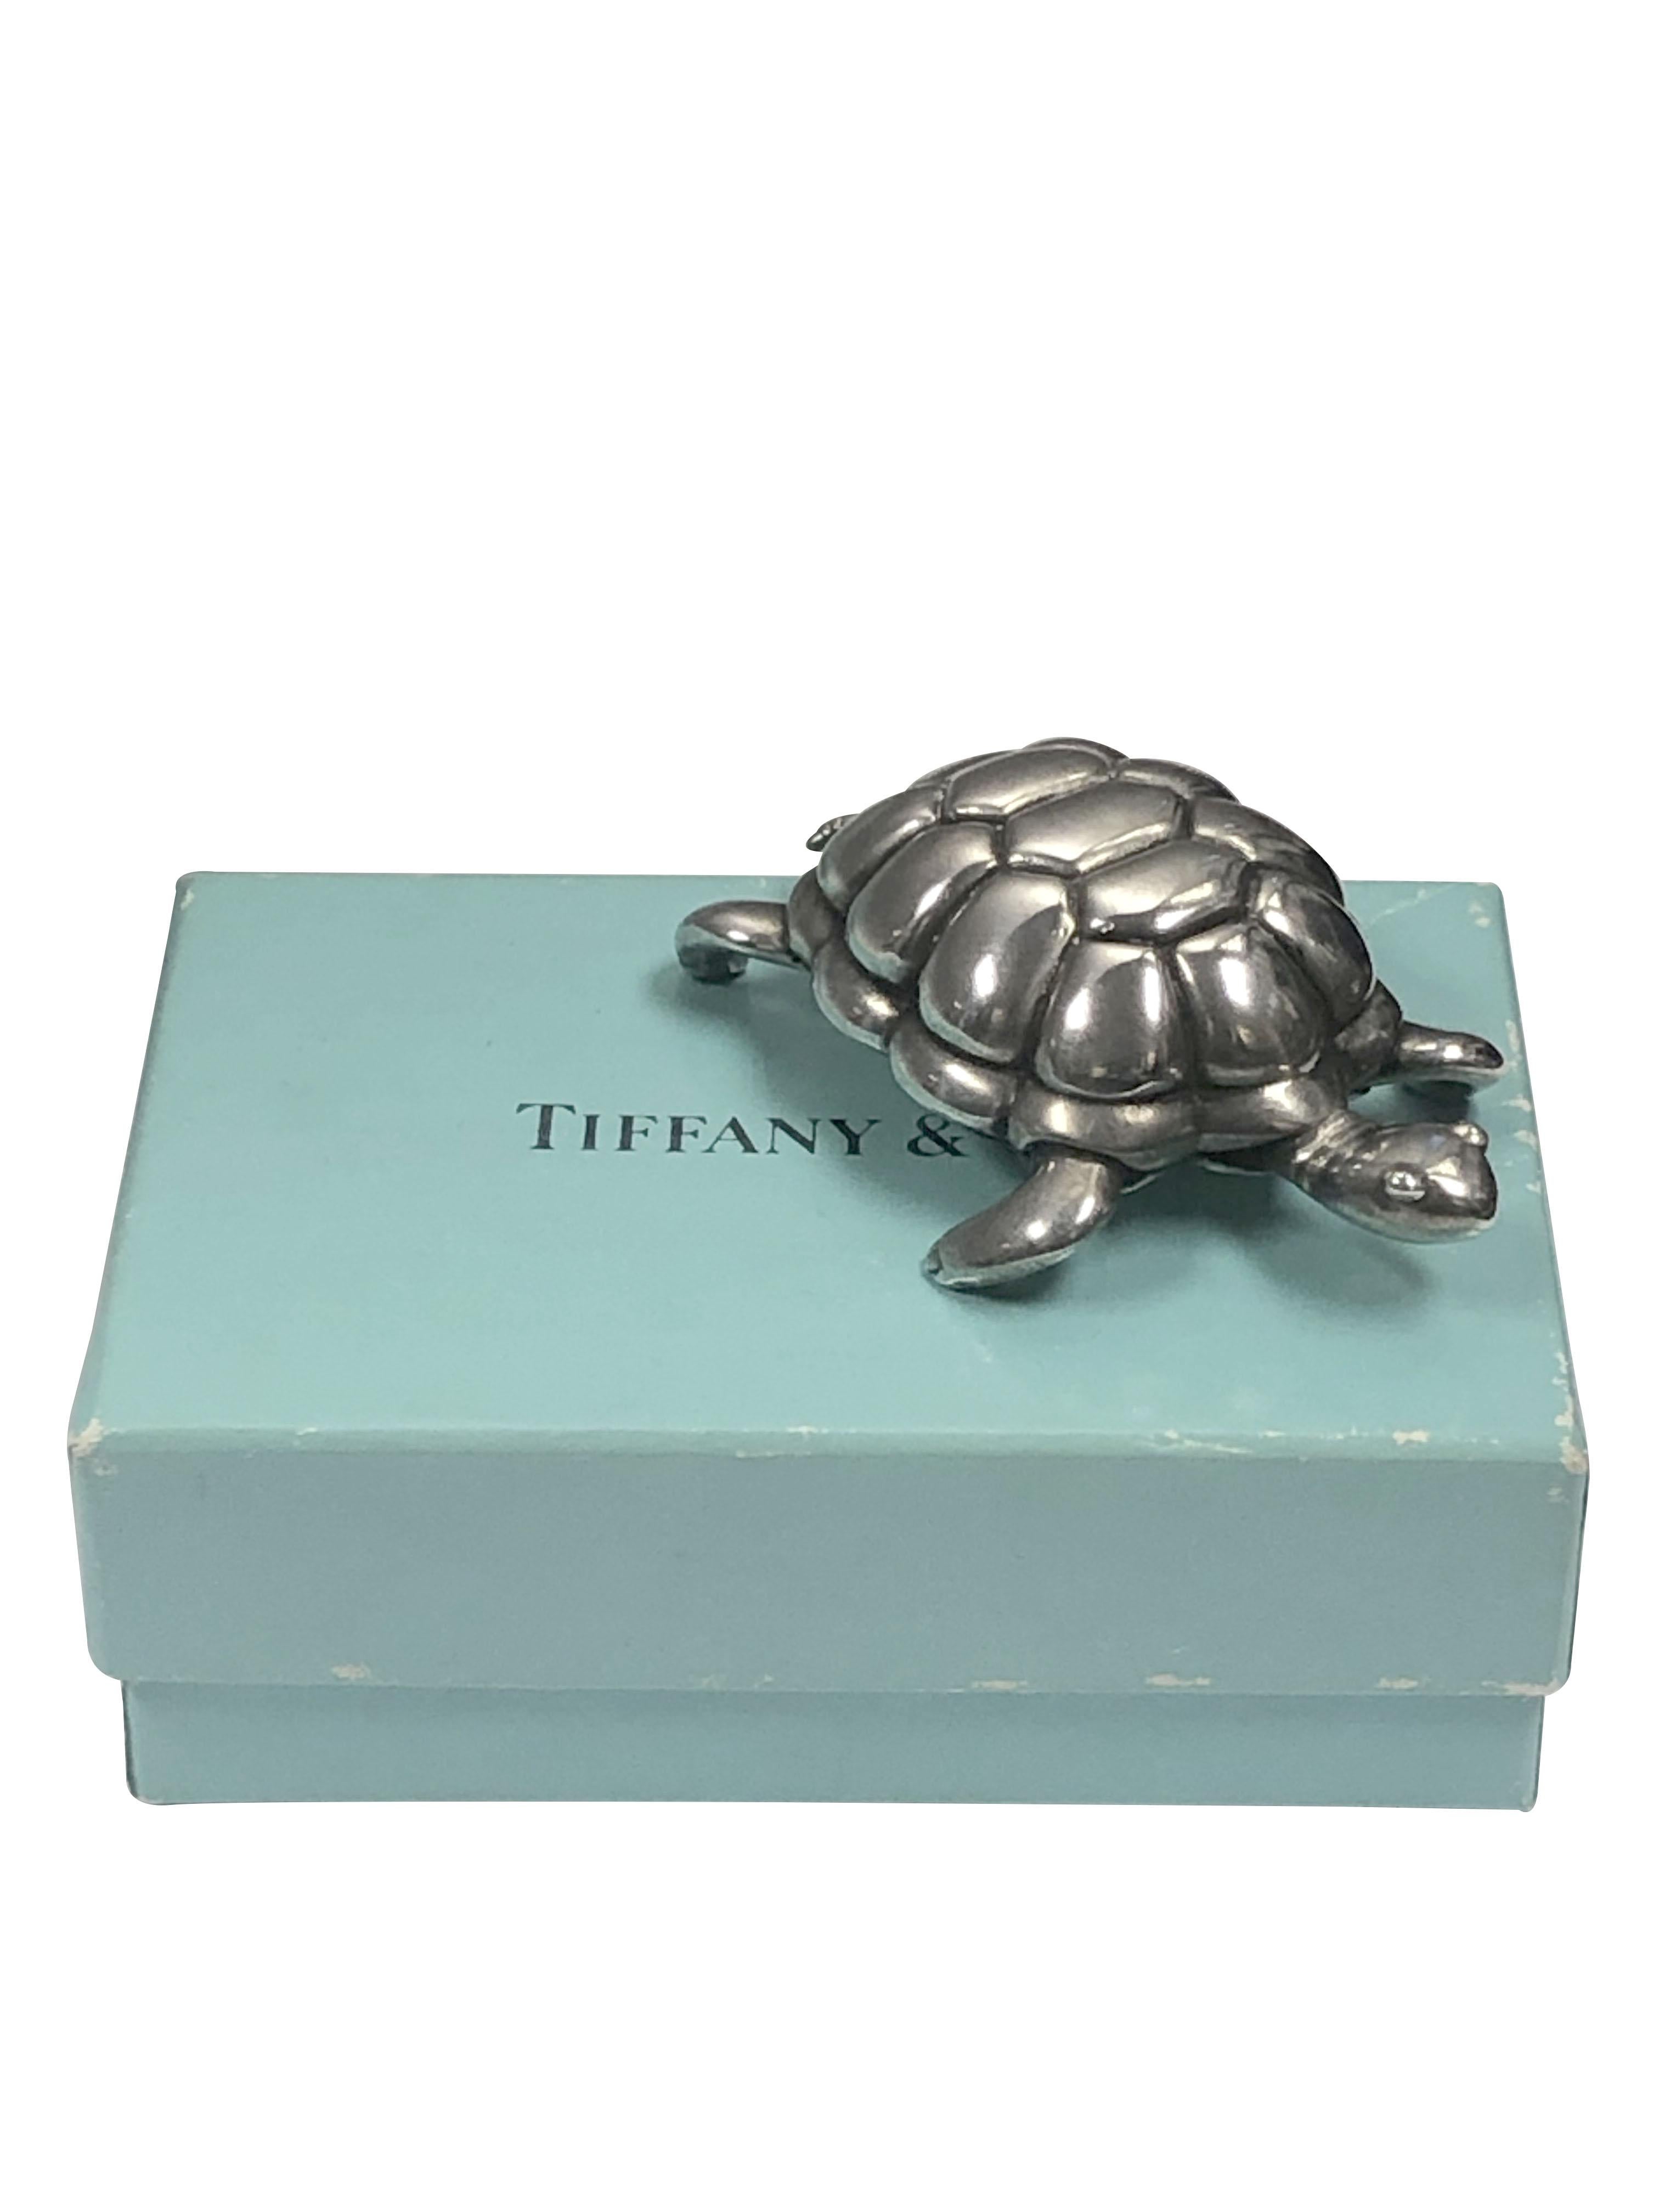 Circa 1998 Tiffany & Company Sterling Silber Schildkröte Briefbeschwerer, Messung 2 1/4 Zoll in der Länge, 1 1/4 Zoll breit, 3/4 Zoll in der Höhe und einem Gewicht von 3,5 Unzen, sehr fein detaillierte, kommt in der ursprünglichen Geschenk-Box. Aus